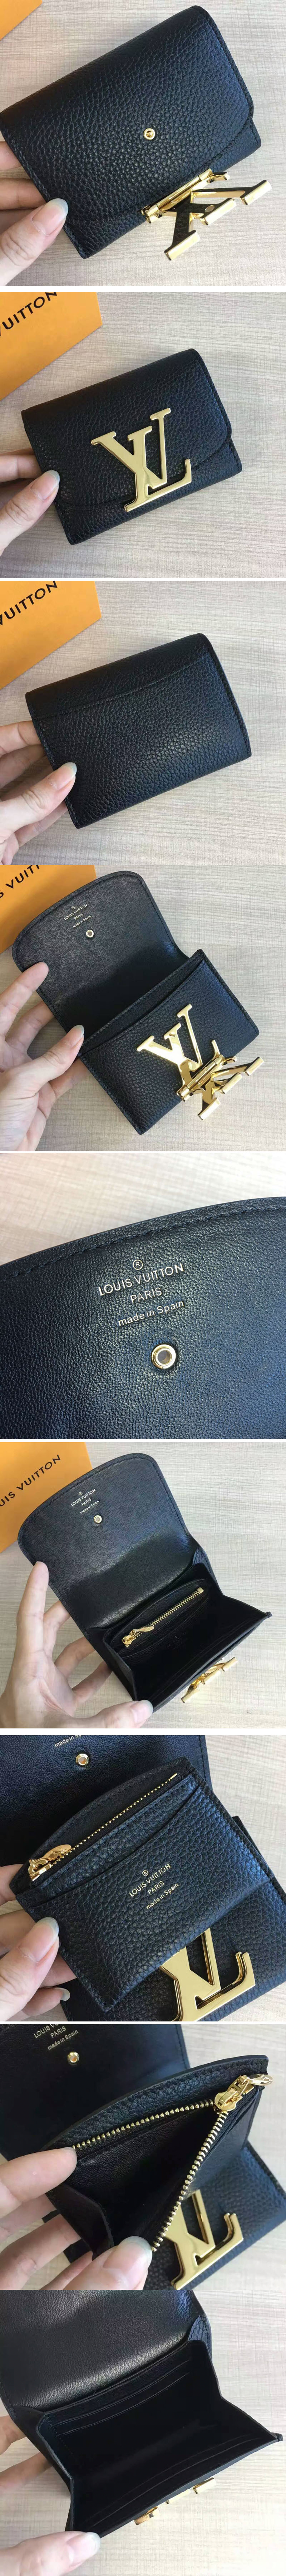 Replica Louis Vuitton M58196 Mandy Wallets 